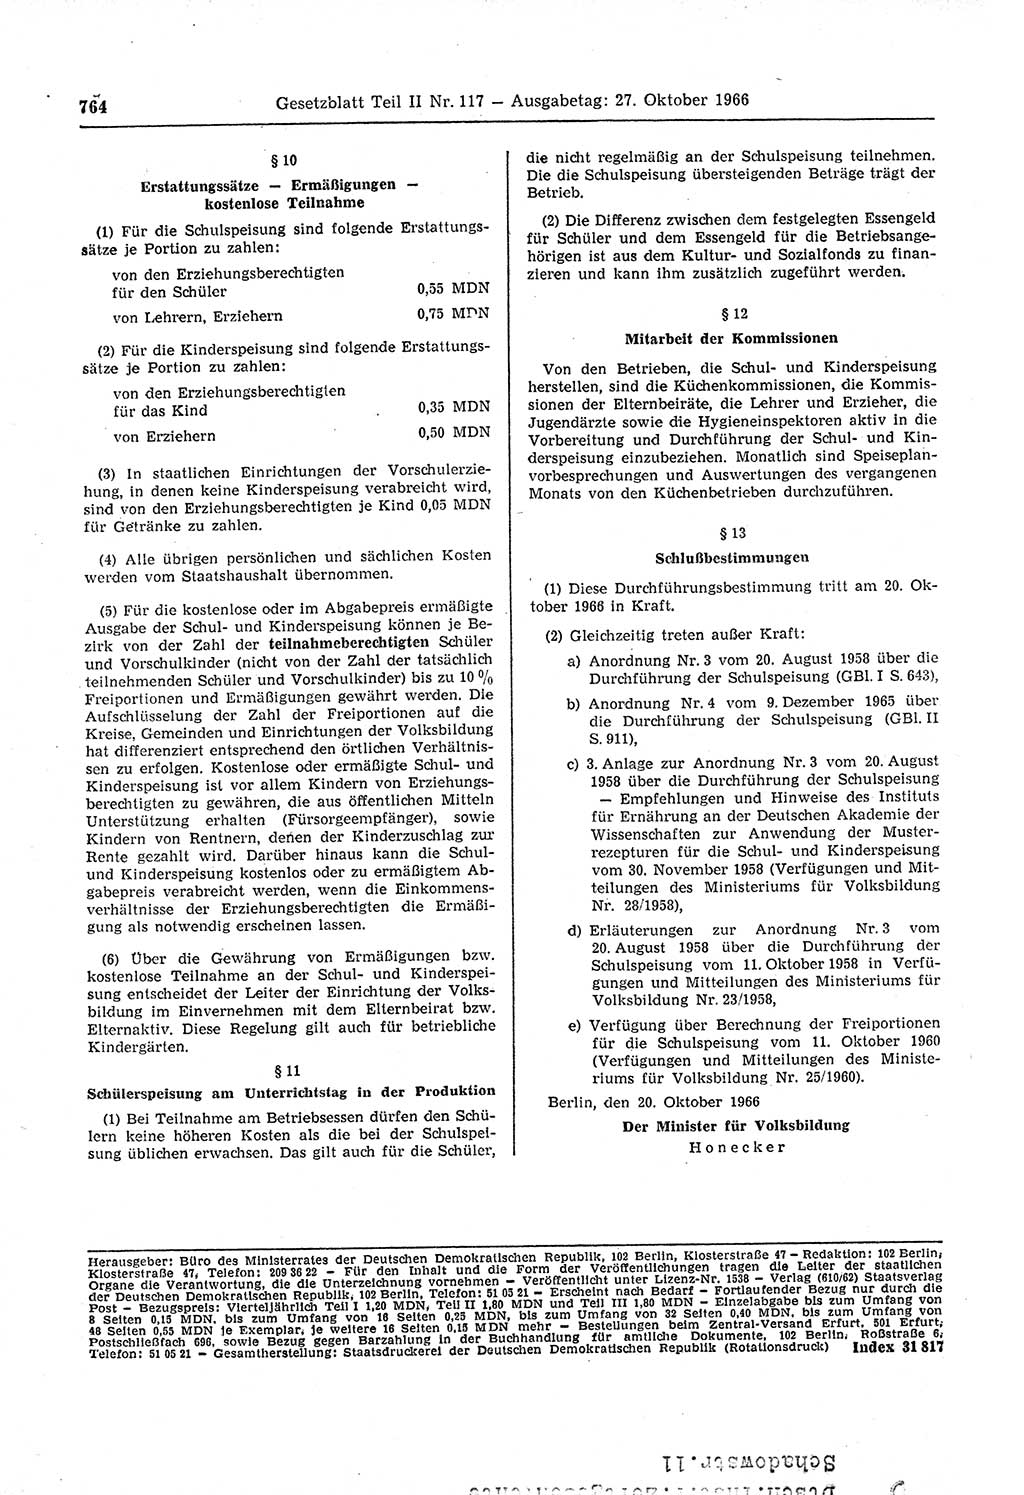 Gesetzblatt (GBl.) der Deutschen Demokratischen Republik (DDR) Teil ⅠⅠ 1966, Seite 764 (GBl. DDR ⅠⅠ 1966, S. 764)